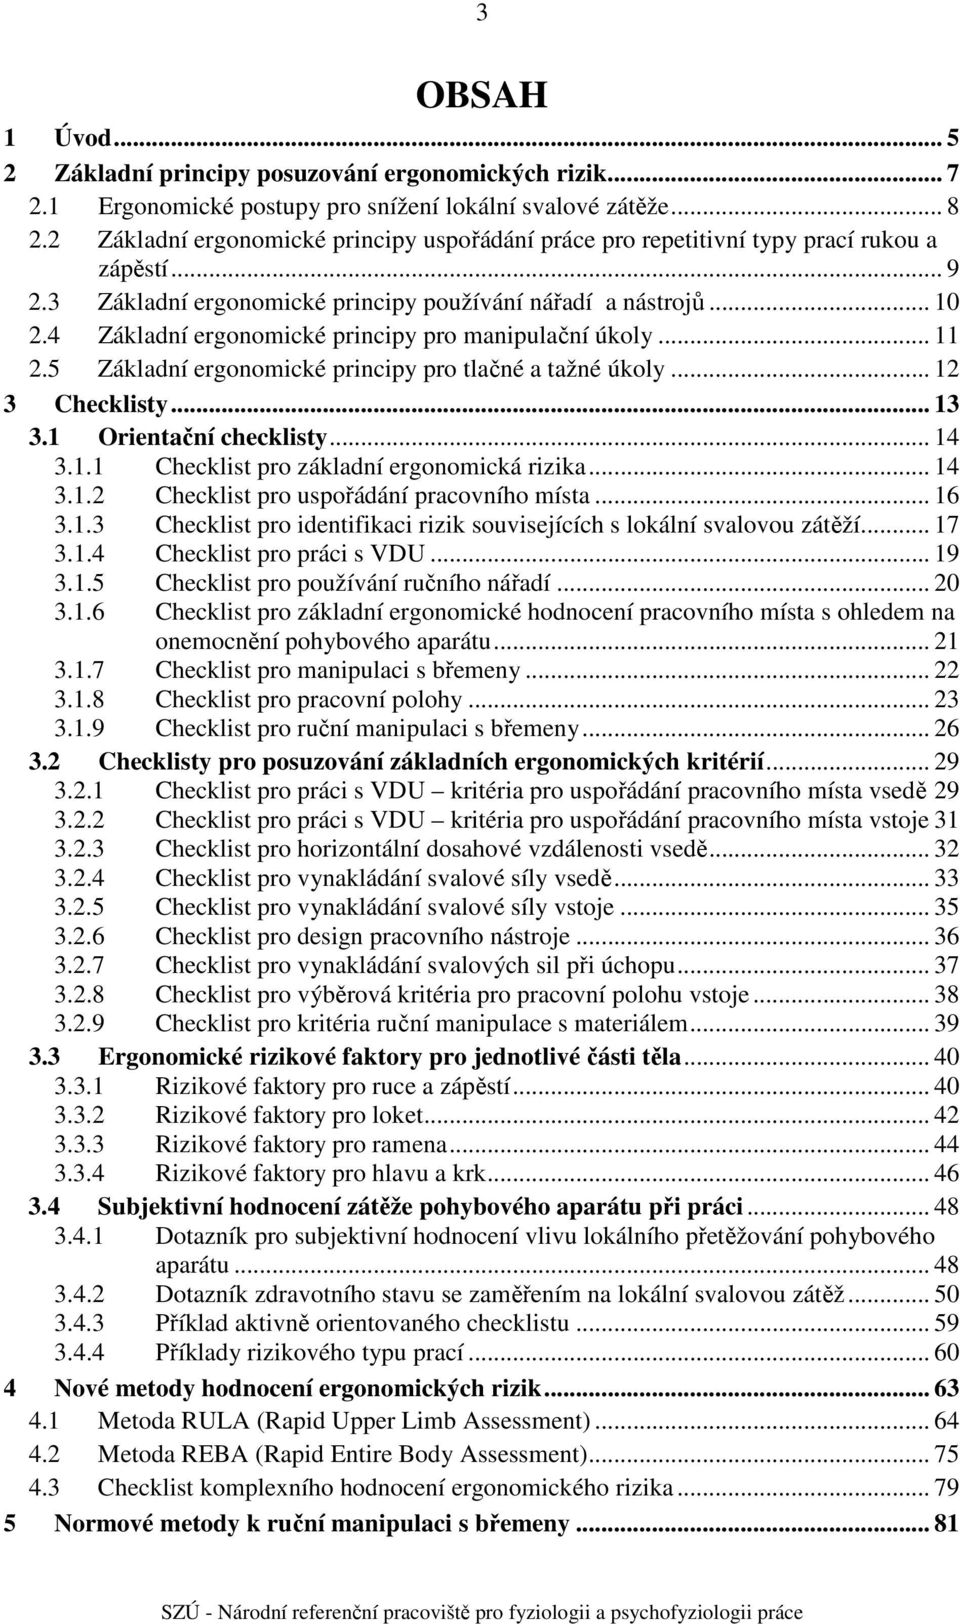 Základní ergonomické principy pro manipulační úkoly... 11 2. Základní ergonomické principy pro tlačné a tažné úkoly... 12 Checklisty... 1.1 Orientační checklisty... 1.1.1 Checklist pro základní ergonomická rizika.